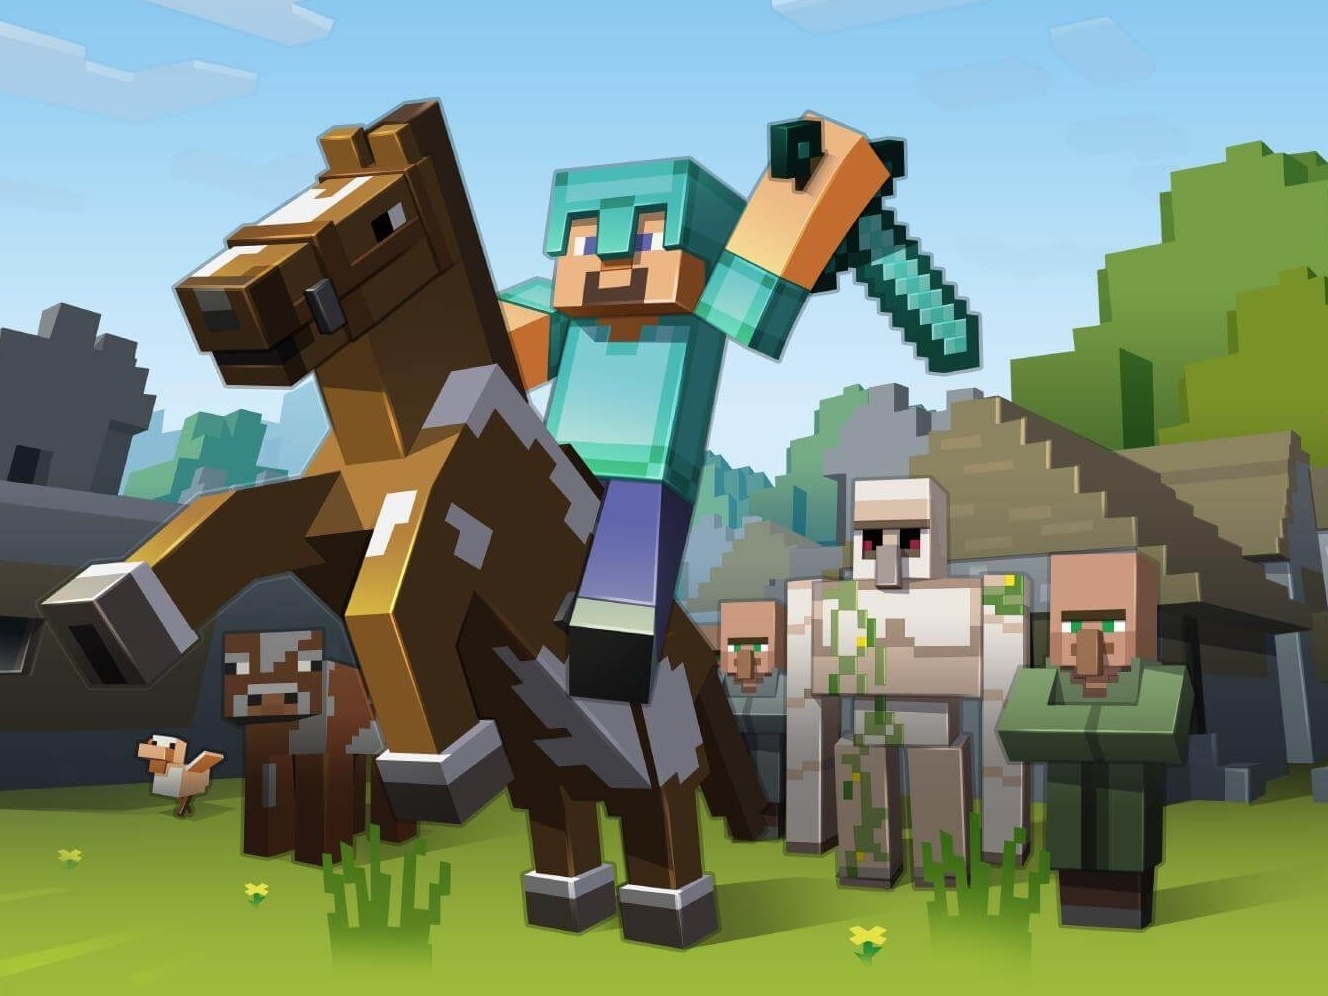 Lacoste lança coleção de roupas para jogadores e personagens de Minecraft, Empresas